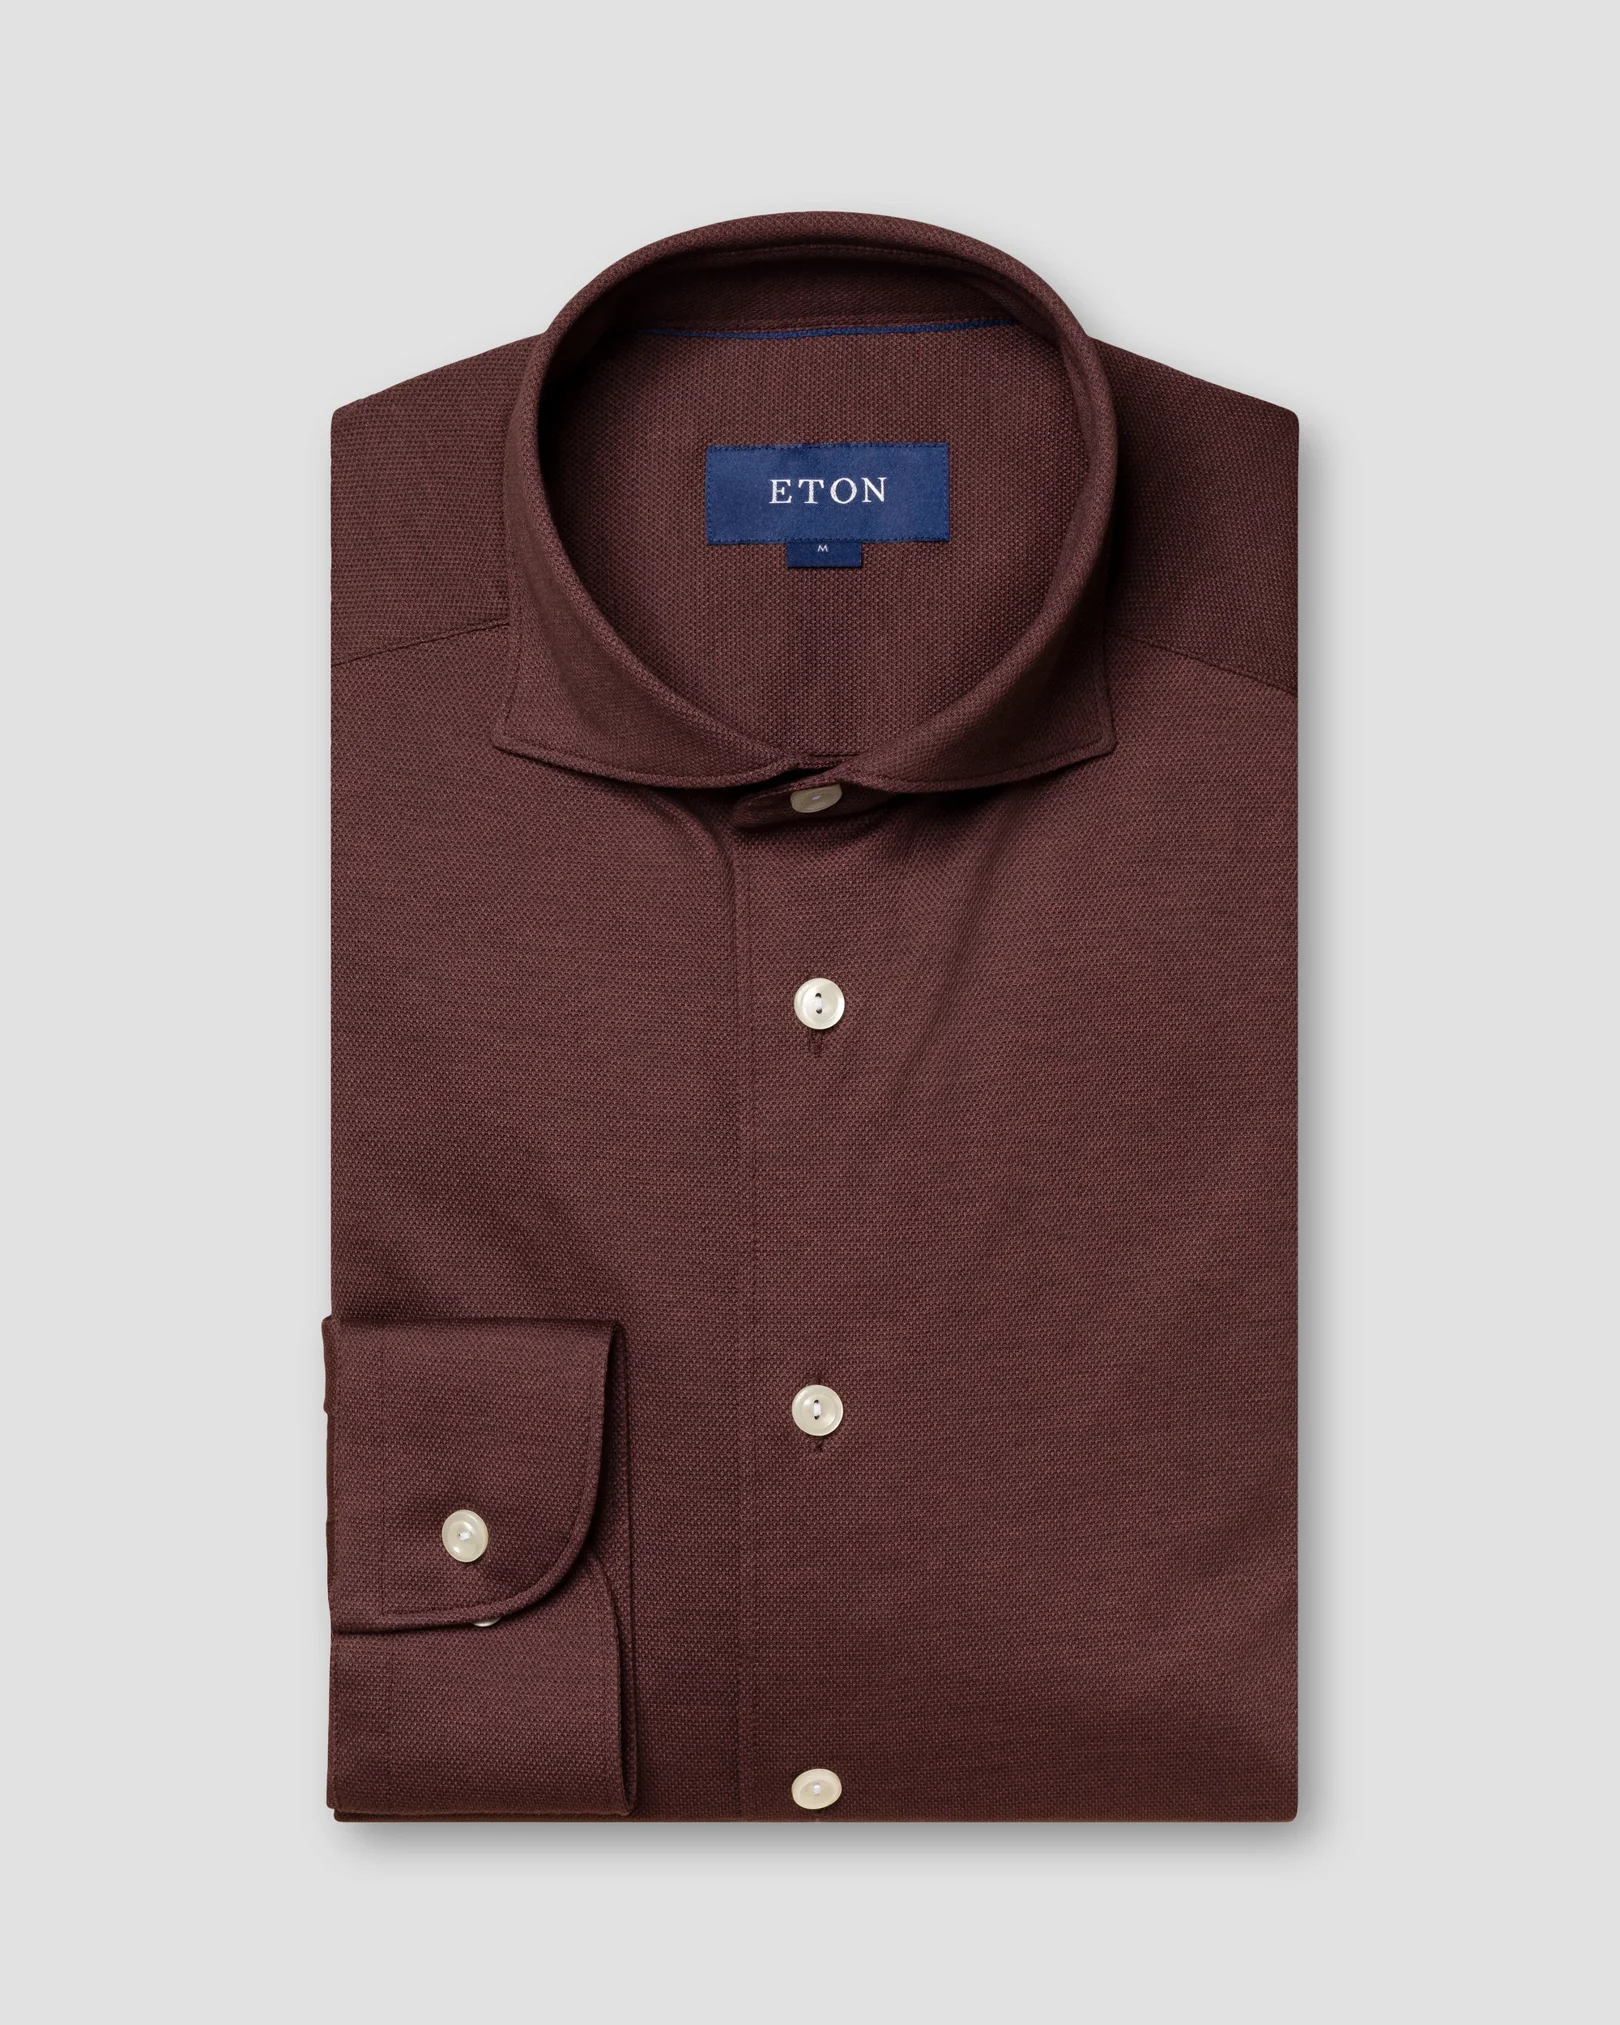 Eton - red pique shirt long sleeve